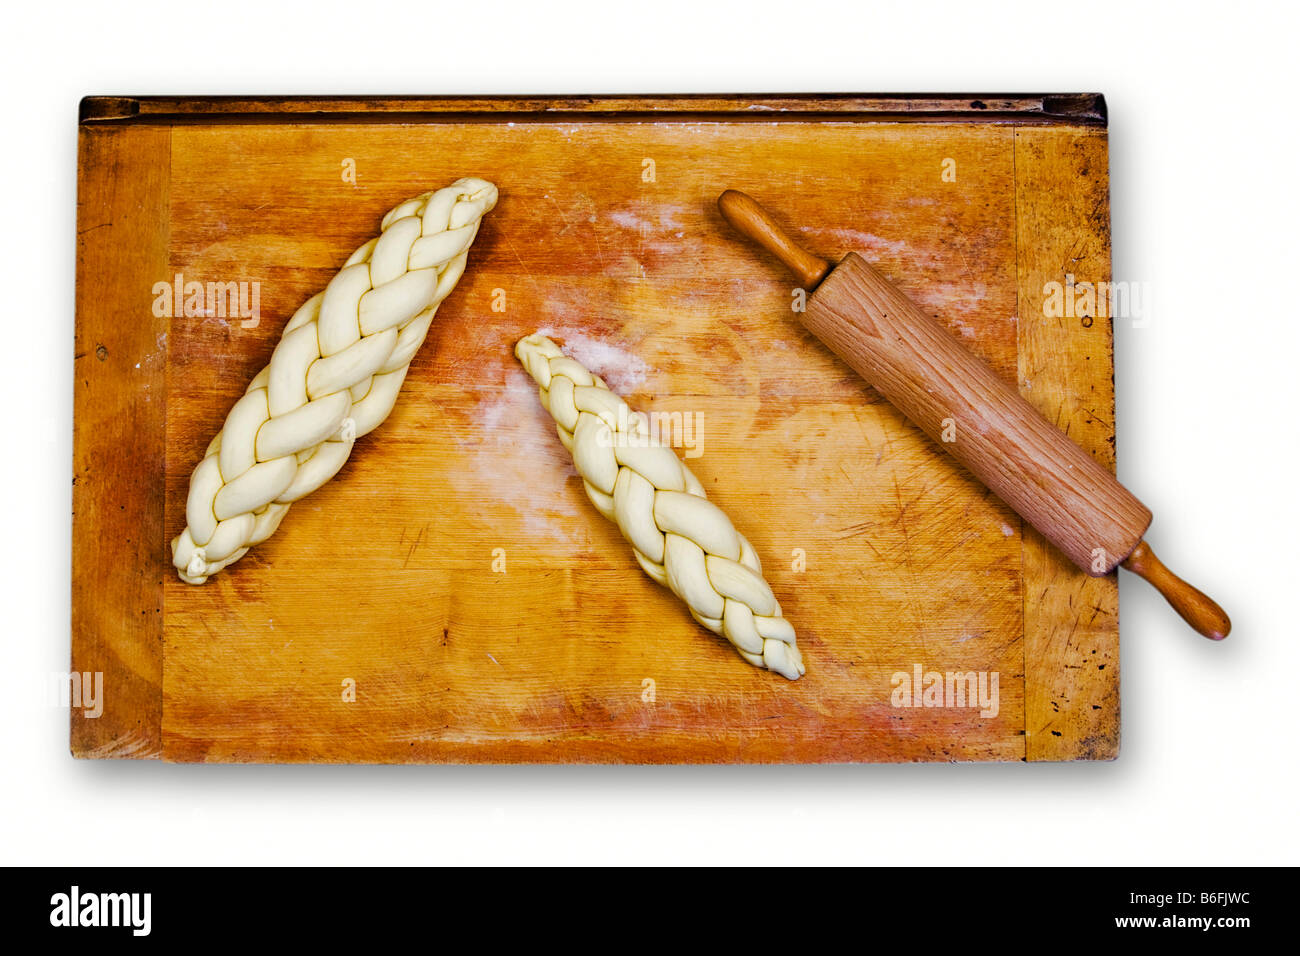 Pain tressé tressés ou non cuits, pain, sur une plaque de cuisson à côté d'un rouleau à pâtisserie Banque D'Images